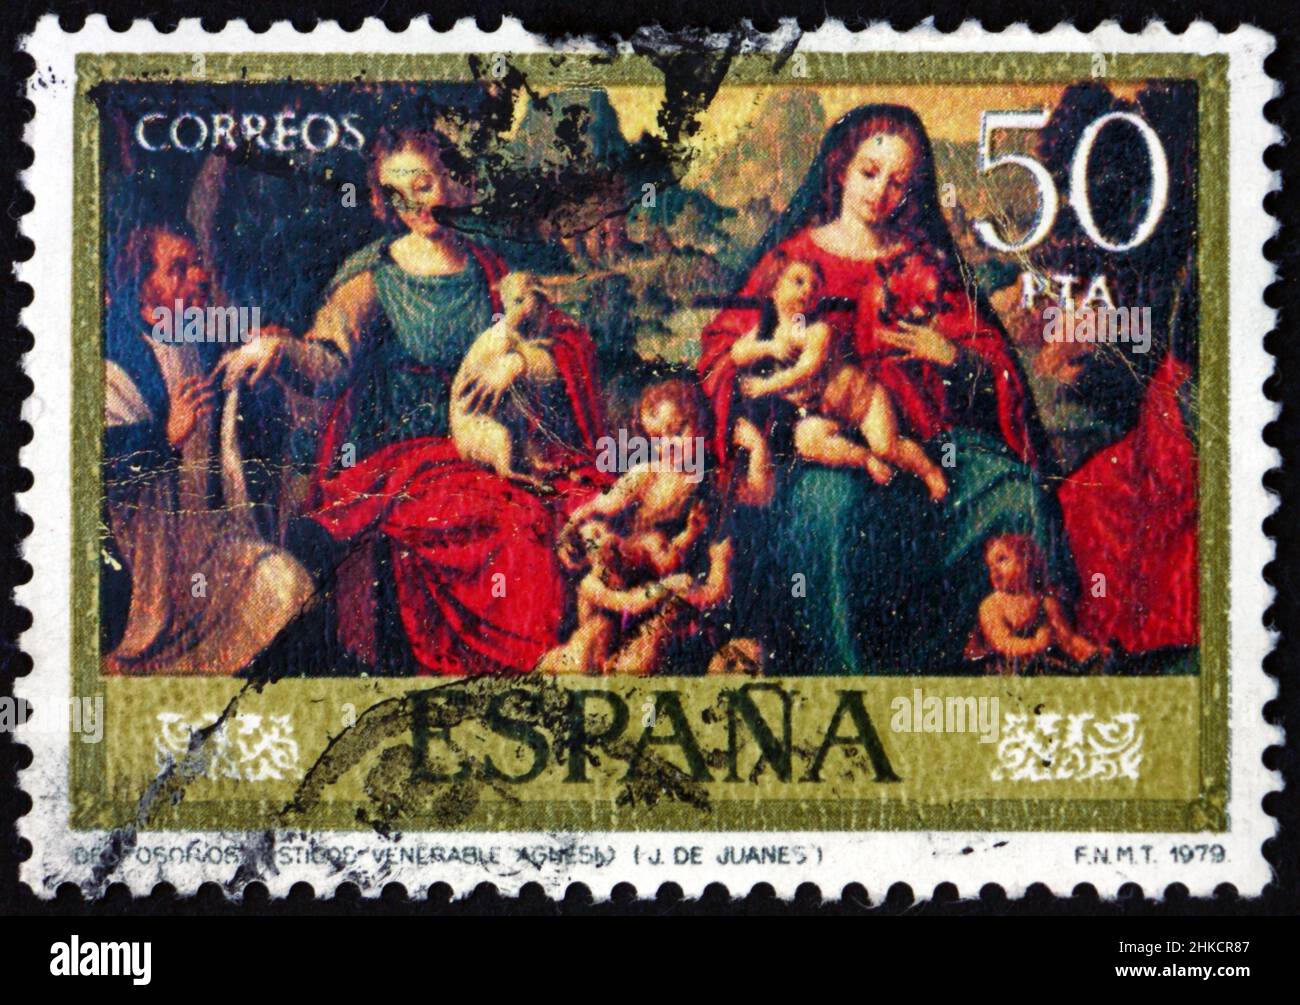 SPAGNA - CIRCA 1979: Un francobollo stampato in Spagna mostra l'adorazione dell'Agnello mistico, dipinto da Juan de Juanes, pittore spagnolo, circa 1979 Foto Stock